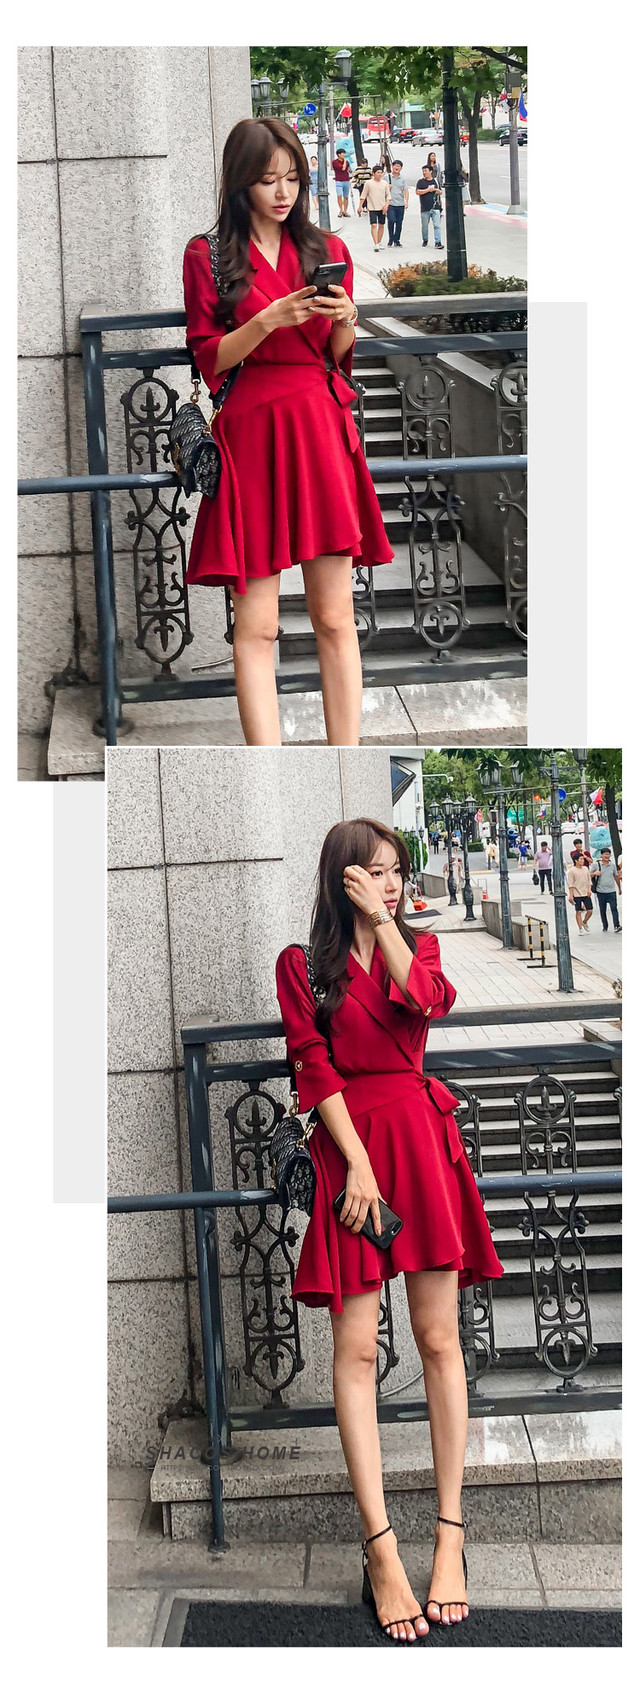 お嬢様風 秋のお出かけコーデ 抜群に可愛い真っ赤なワンピース デート服にもおすすめ 美人服図鑑